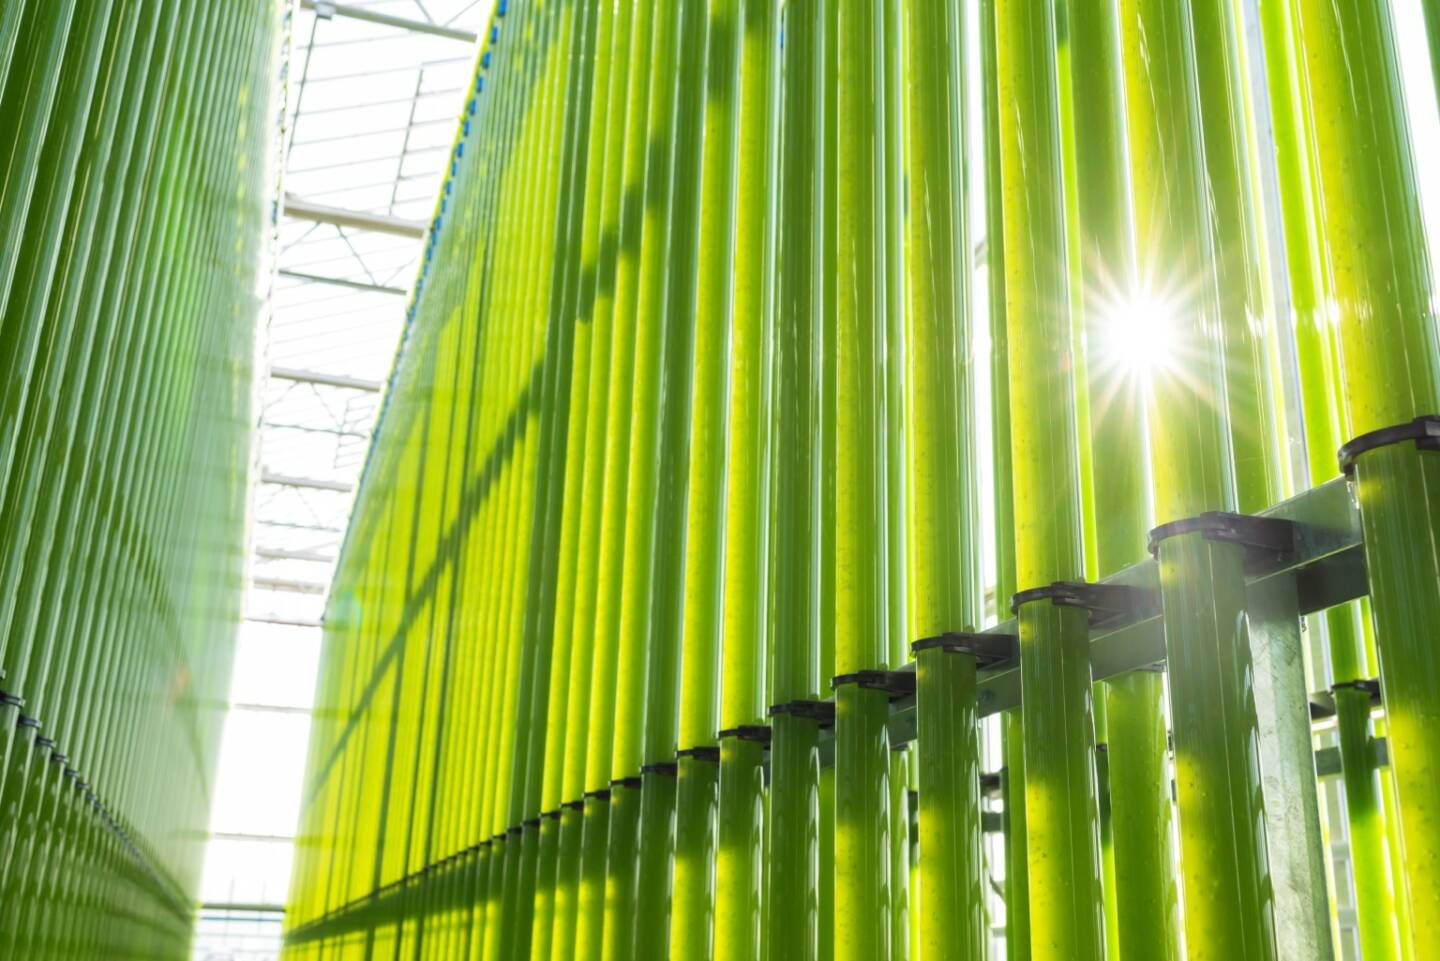 Einen zukunftweisenden Schritt setzte heute die eparella GmbH, eine Tochter der ecoduna AG, bei der Mikroalgenproduktion im industriellen Maßstab. Nach erfolgreichen Jahren der Forschung und Entwicklung ist nun, nach 11 Monaten Bauzeit, auf einer Fläche von über 10.000m2 eines der weltweit größten Mikroalgen-Wachstumssysteme entstanden. Insgesamt soll nach dem Vollausbau - im Jahr 2021 - eine Kapazität von bis zu 300t Biomasse generiert werden; in der derzeitigen Ausbaustufe sind es jährlich 100t trockene Algenbiomasse. Die Baukosten betrugen 18 Mio. Euro. Bild: ecoduna